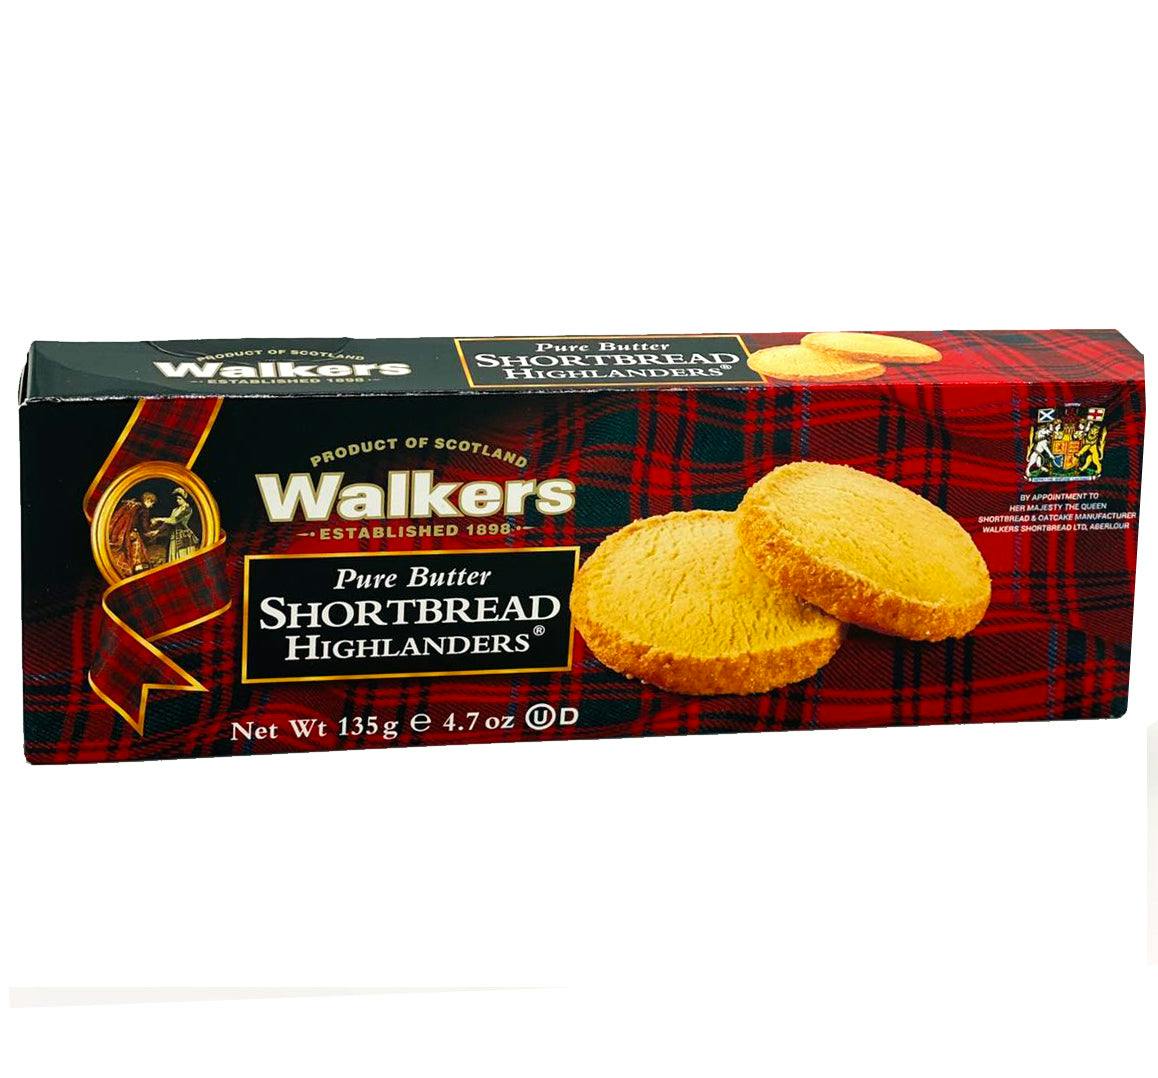 老牌儿苏格兰黄油饼干 Walkers  无人工色素添加剂香料使用